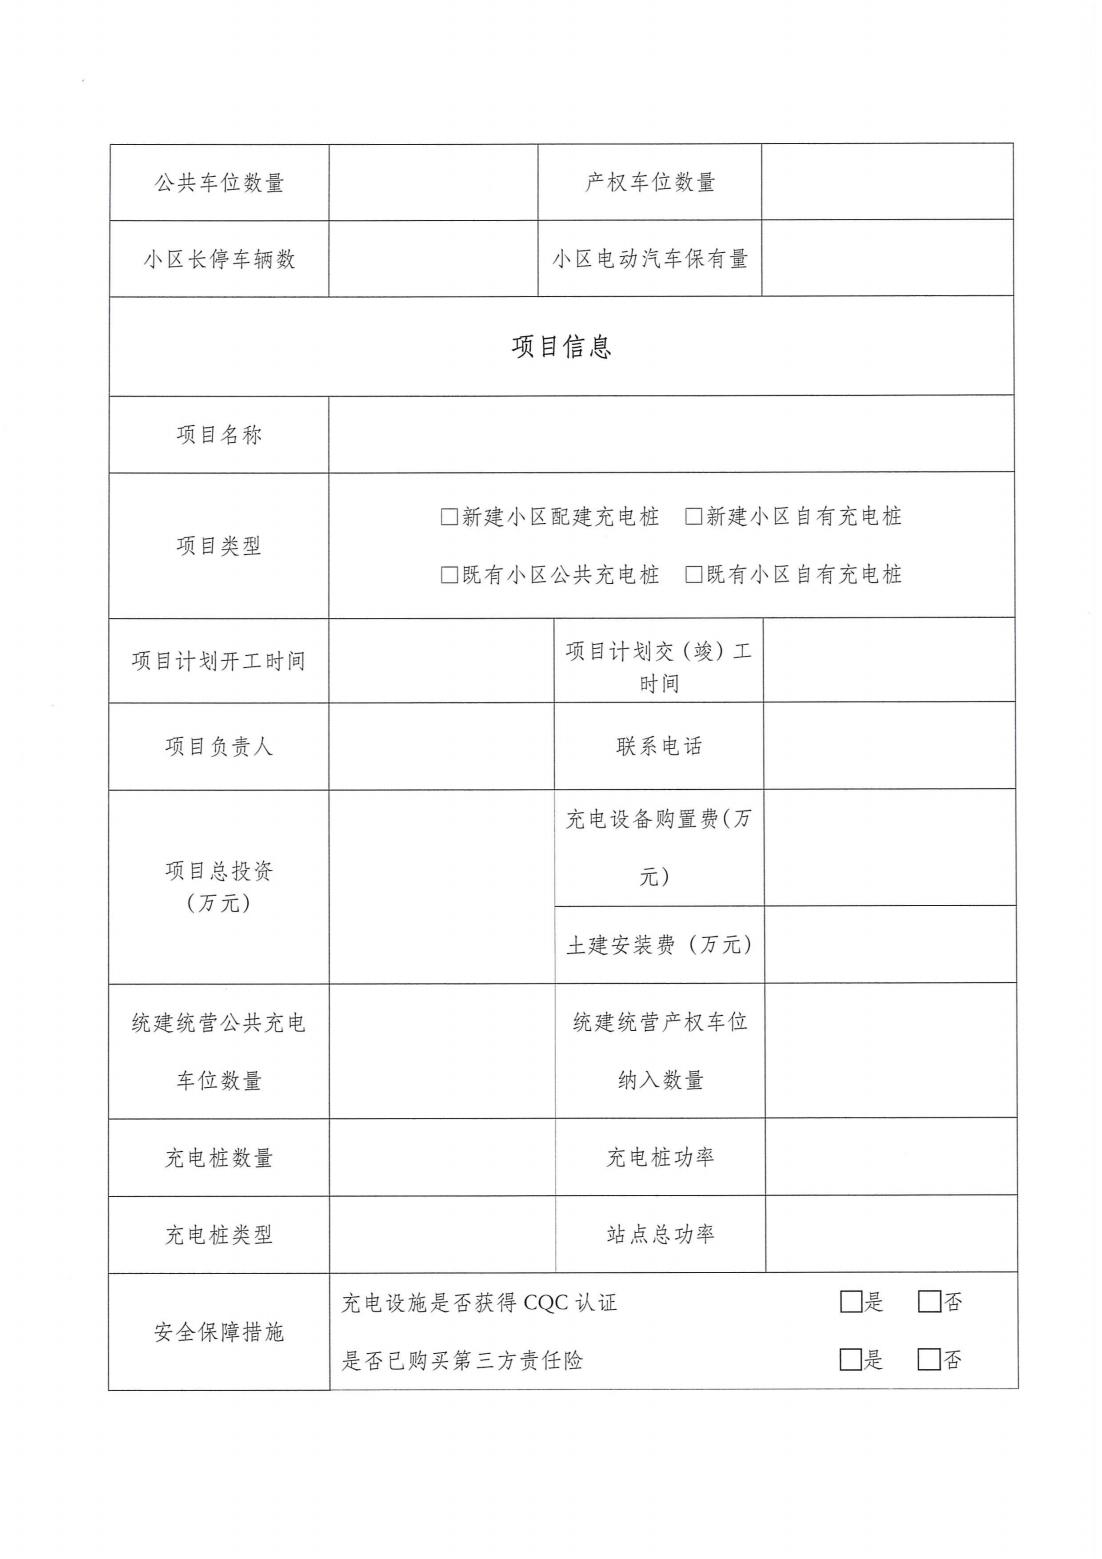 8红头文件-2023年度上海市充电设施“统建统营”示范小区的建设要求-新_07